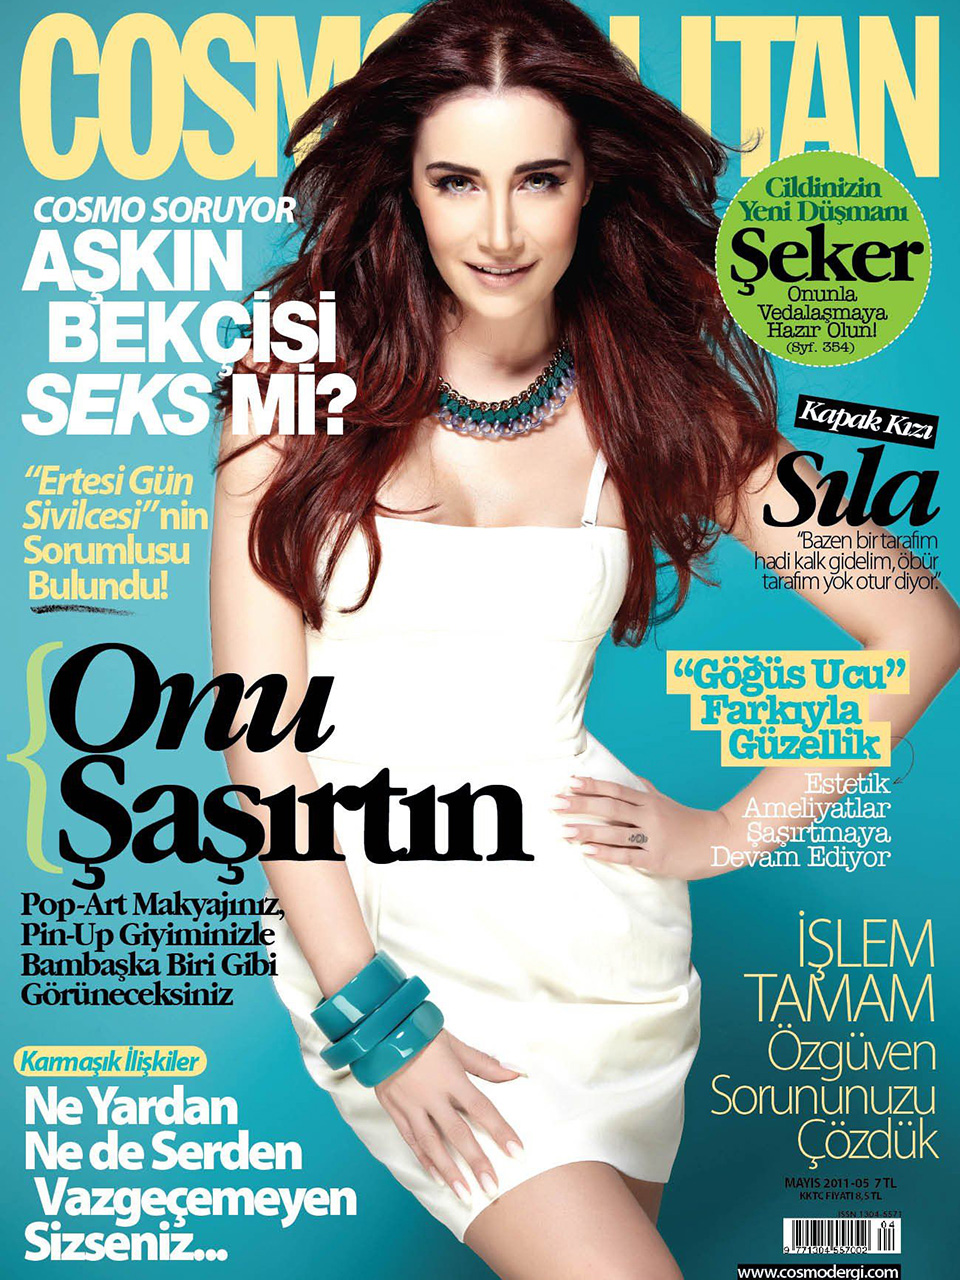 Tursko izdanje časopisa Cosmopolitan. 